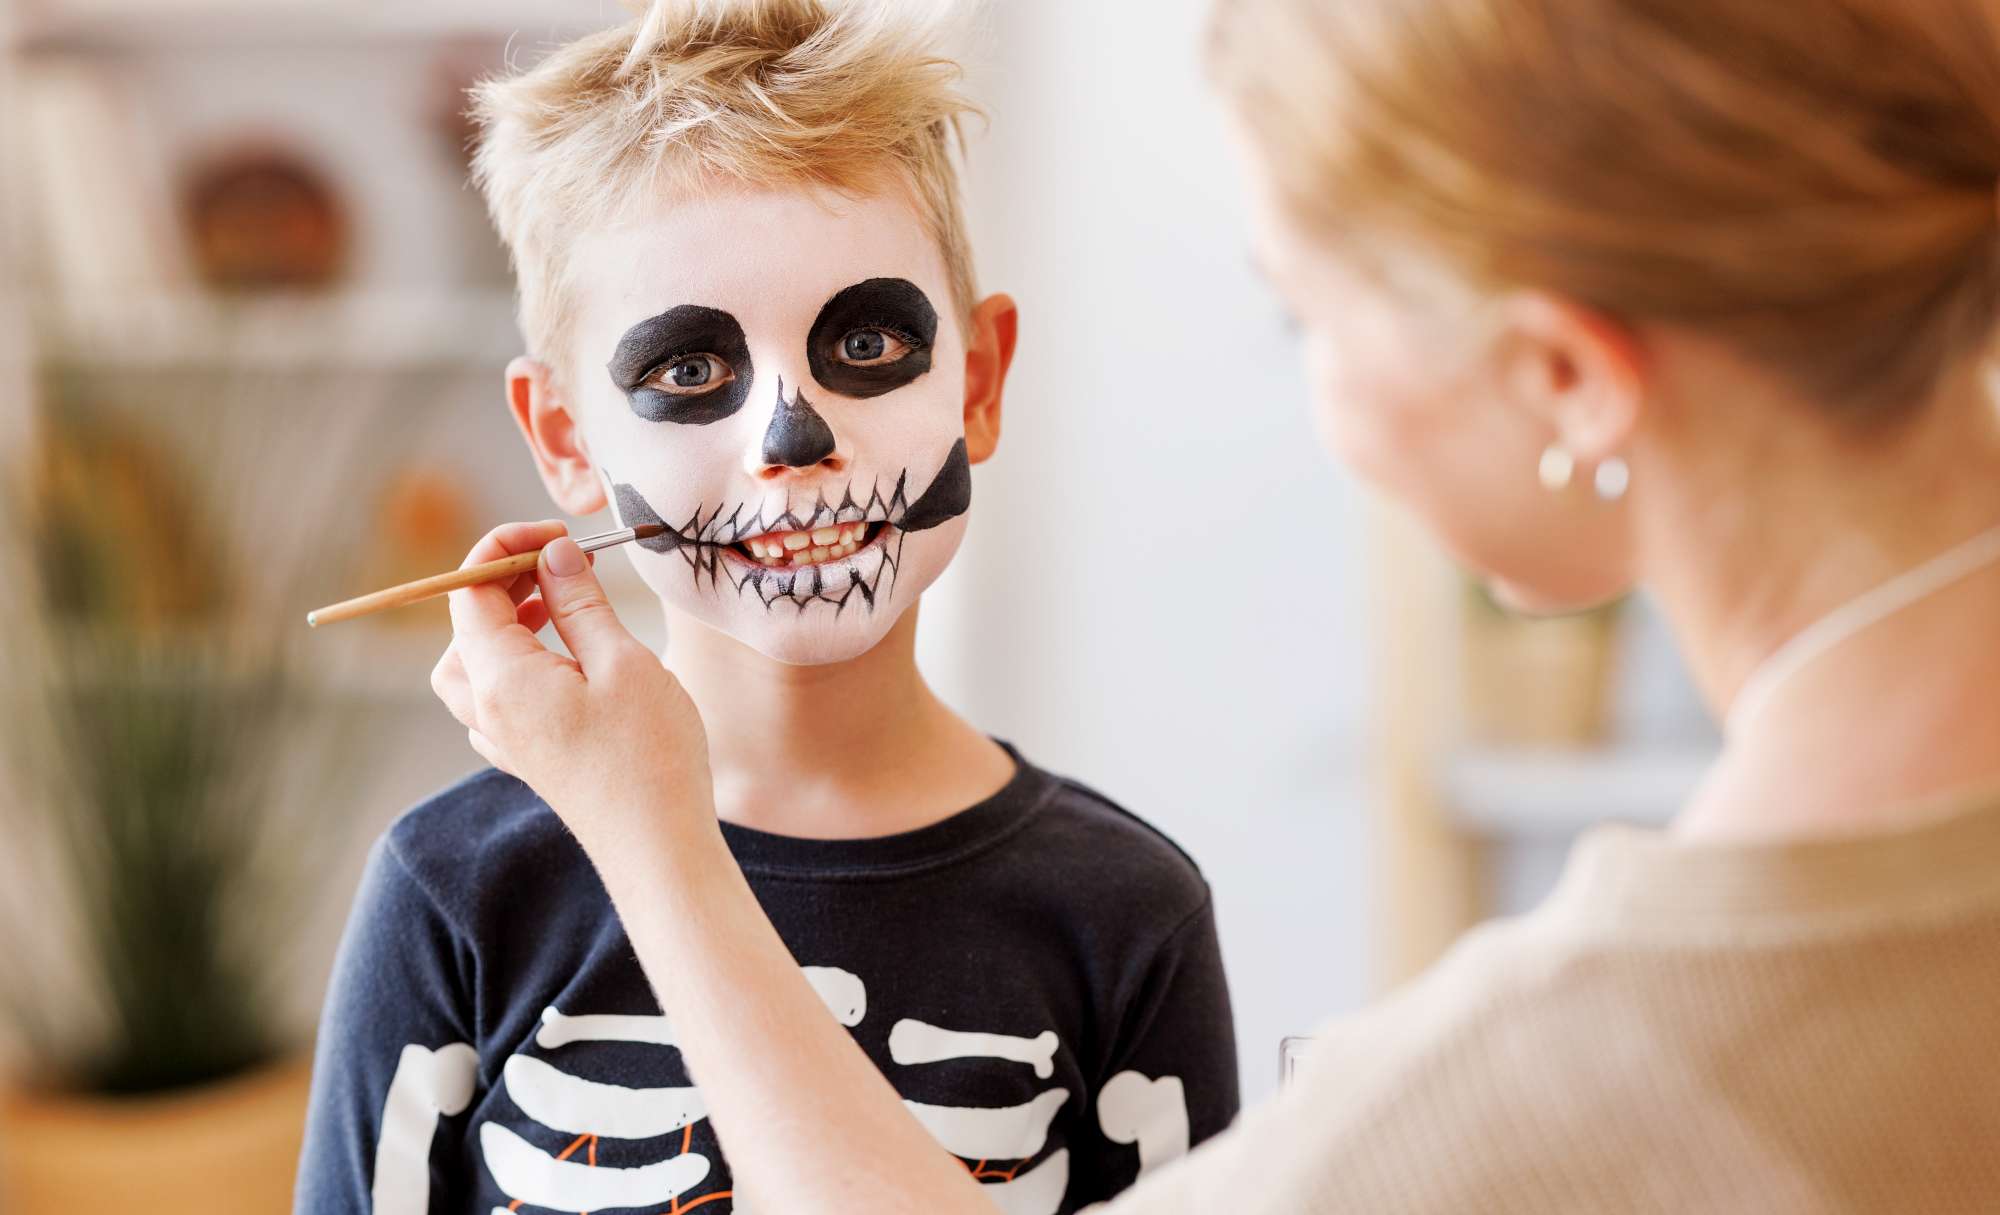 Trucco semplice per i bambini ad Halloween: come realizzarlo - Donna Moderna